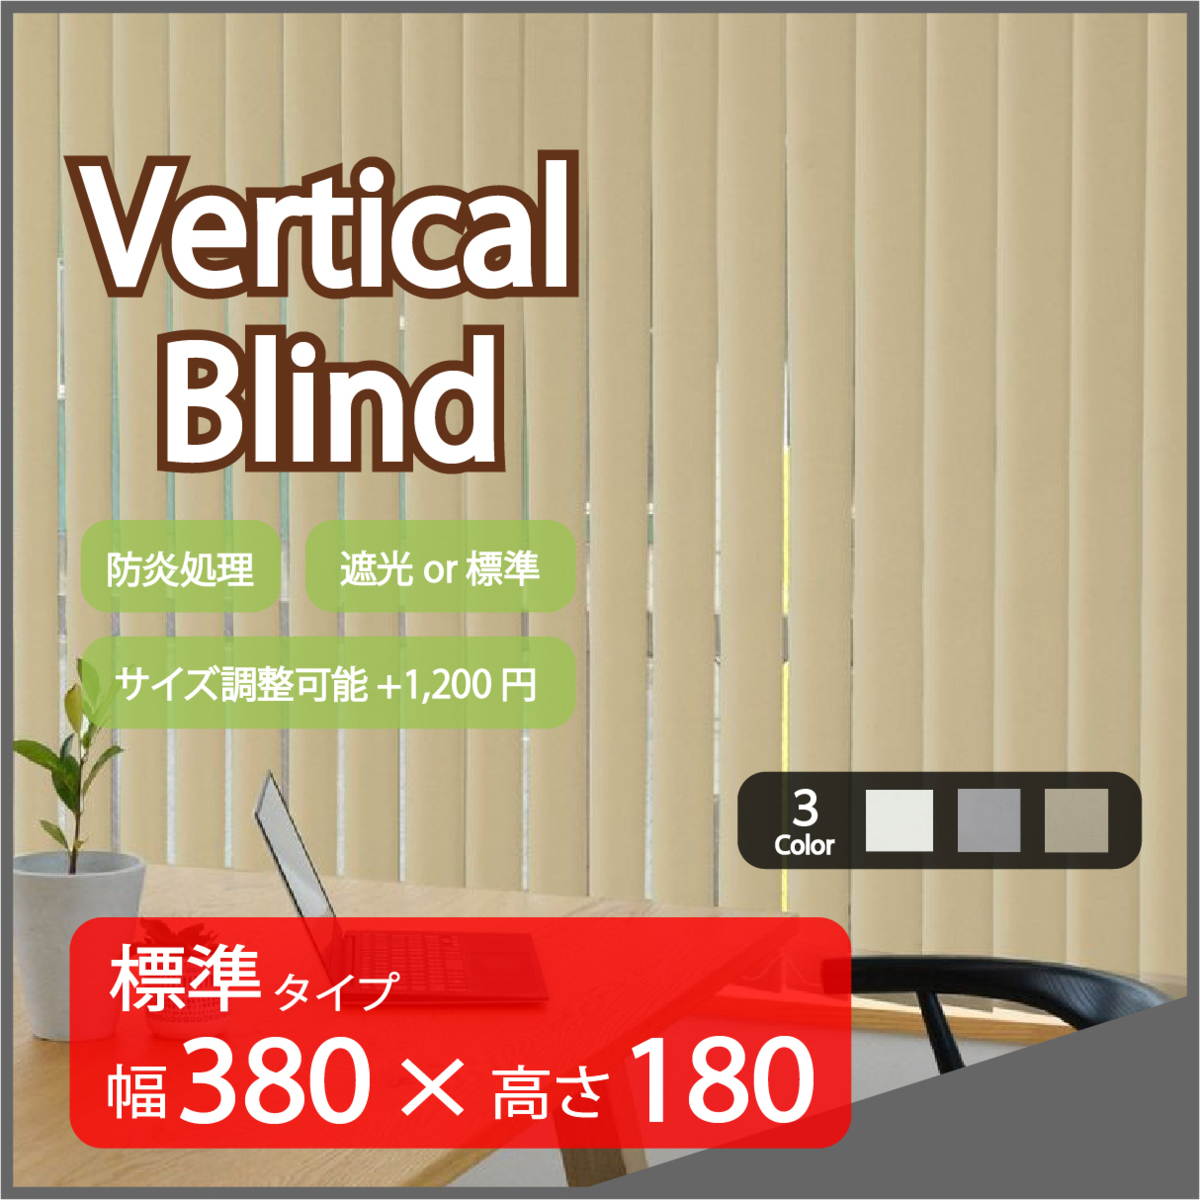 超ポイントアップ祭 標準タイプ ベージュ バーチカルブラインド Verticalblind 高品質 幅380cm×高さ180cm カーテン ブラインド タテ型 縦型 サイズ加工可能 ブラインド